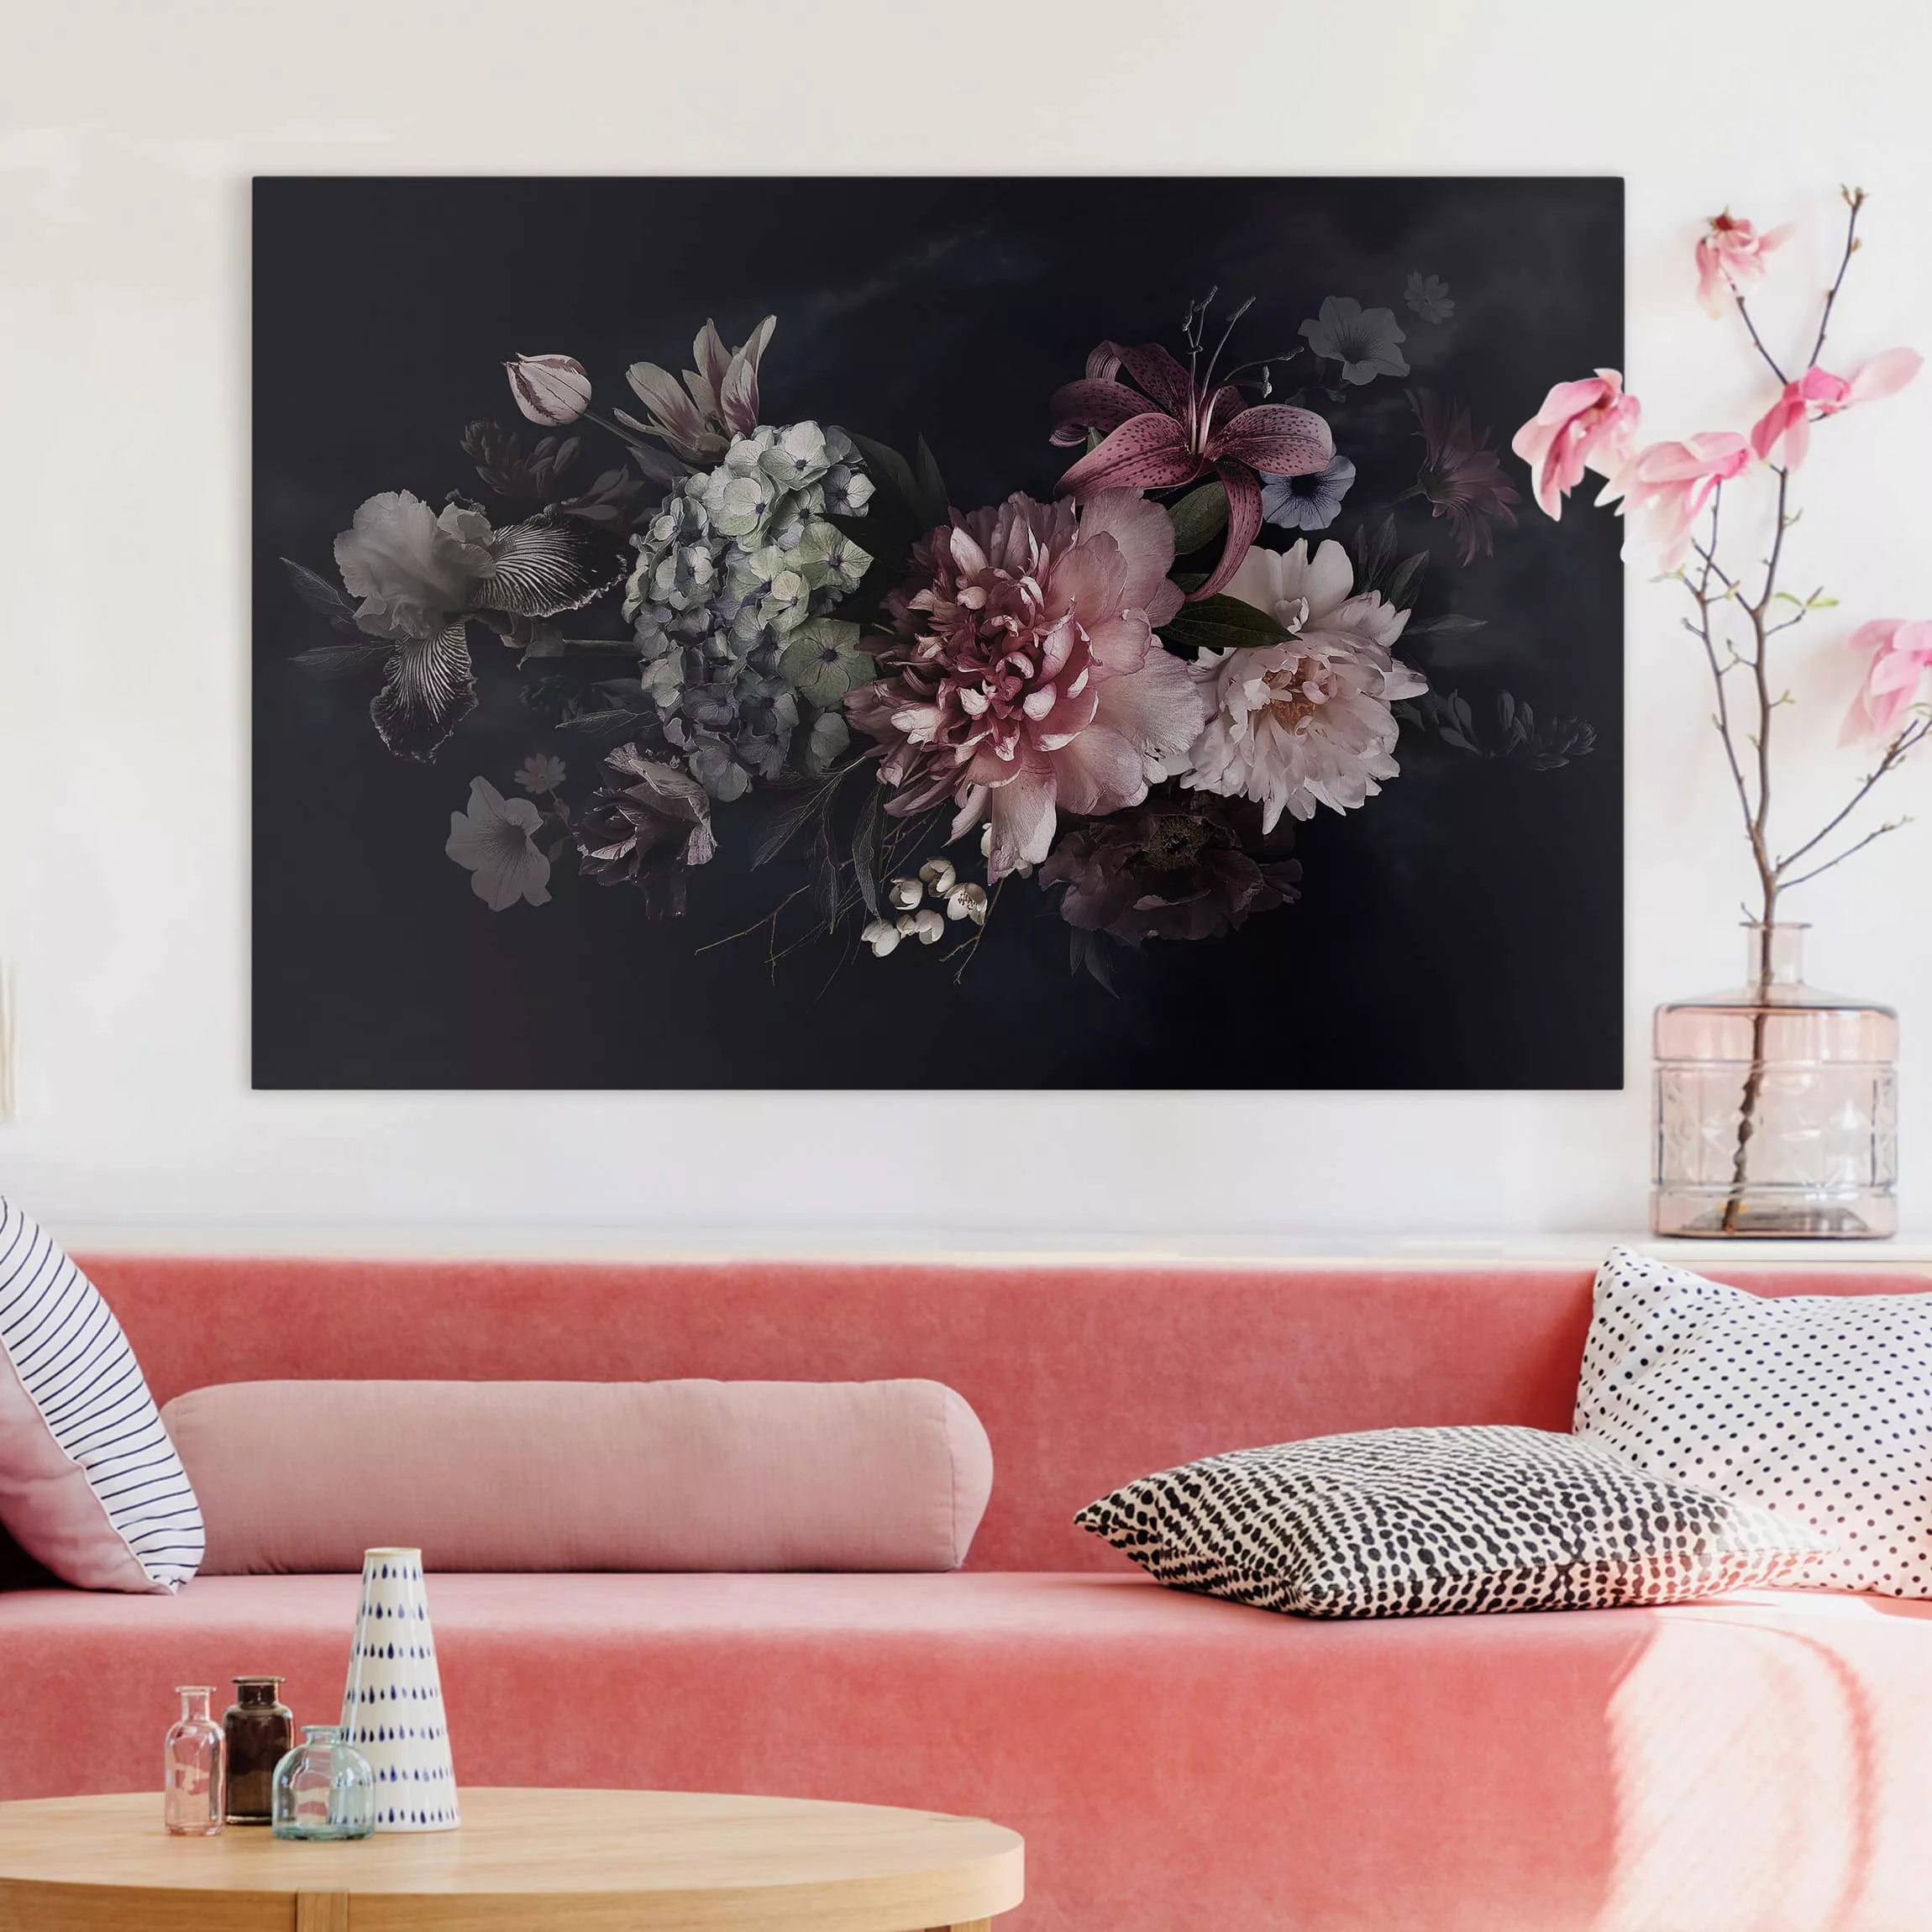 Leinwandbild Blumen - Querformat Blumen mit Nebel auf Schwarz günstig online kaufen